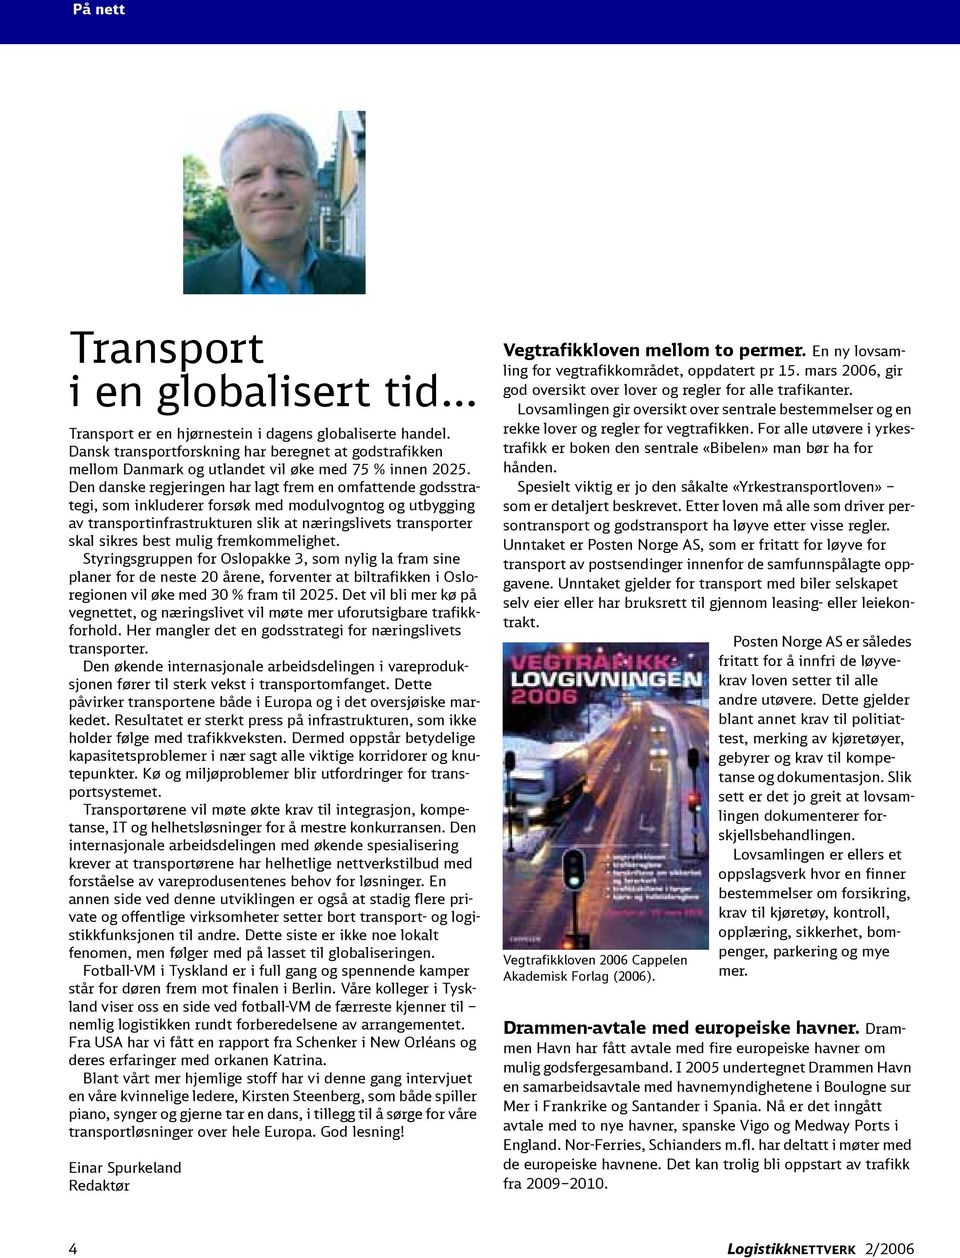 Den danske regjeringen har lagt frem en omfattende godsstrategi, som inkluderer forsøk med modulvogntog og utbygging av transportinfrastrukturen slik at næringslivets transporter skal sikres best